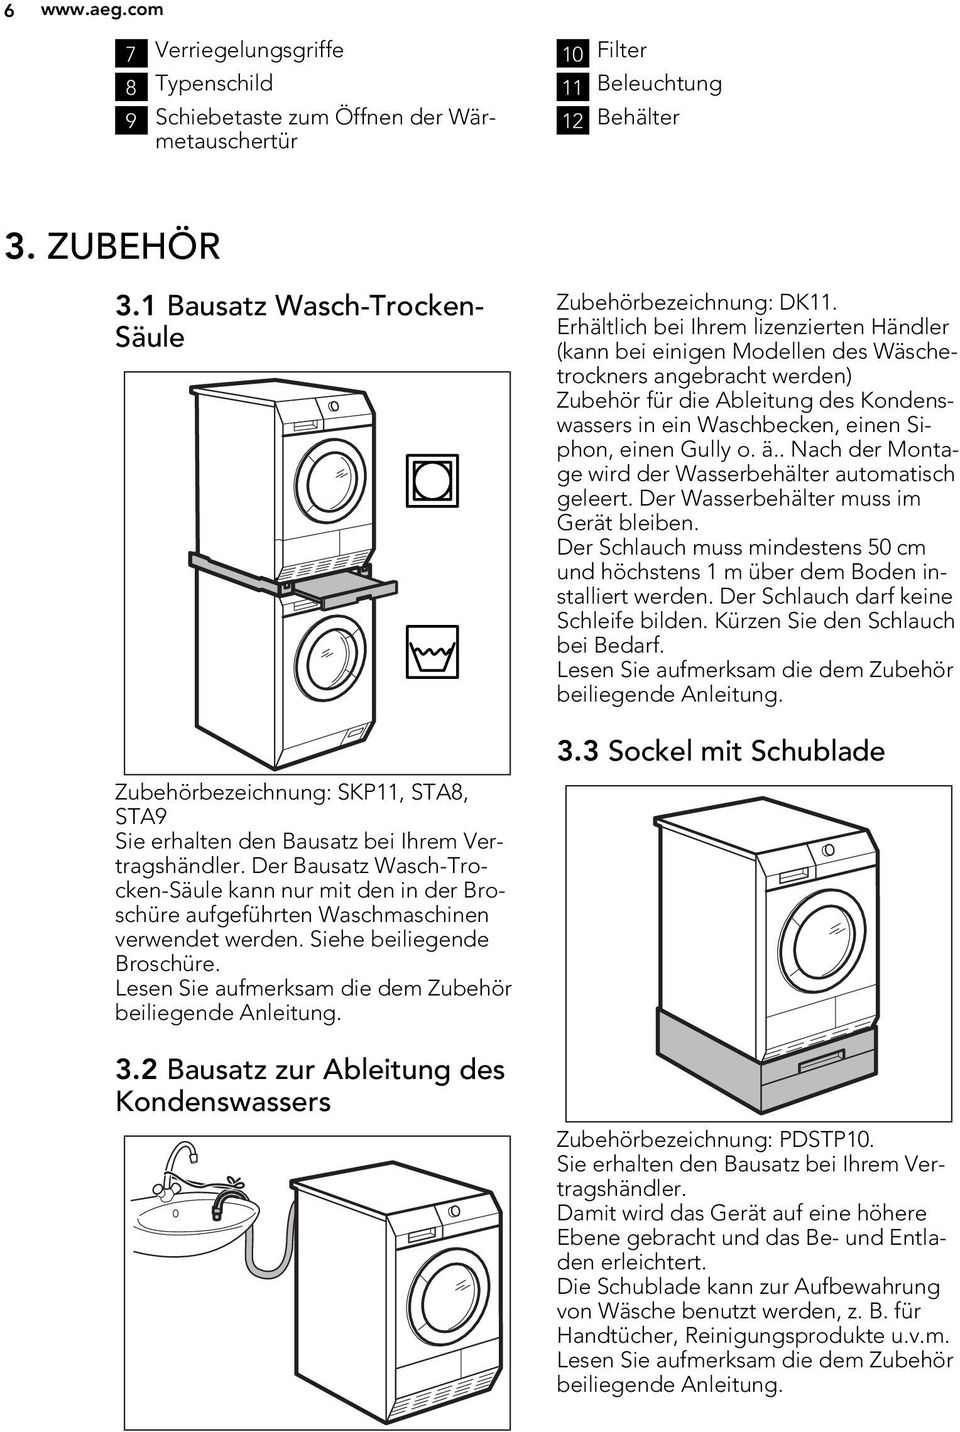 Der Bausatz Wasch-Trocken-Säule kann nur mit den in der Broschüre aufgeführten Waschmaschinen verwendet werden. Siehe beiliegende Broschüre. Lesen Sie aufmerksam die dem Zubehör beiliegende Anleitung.